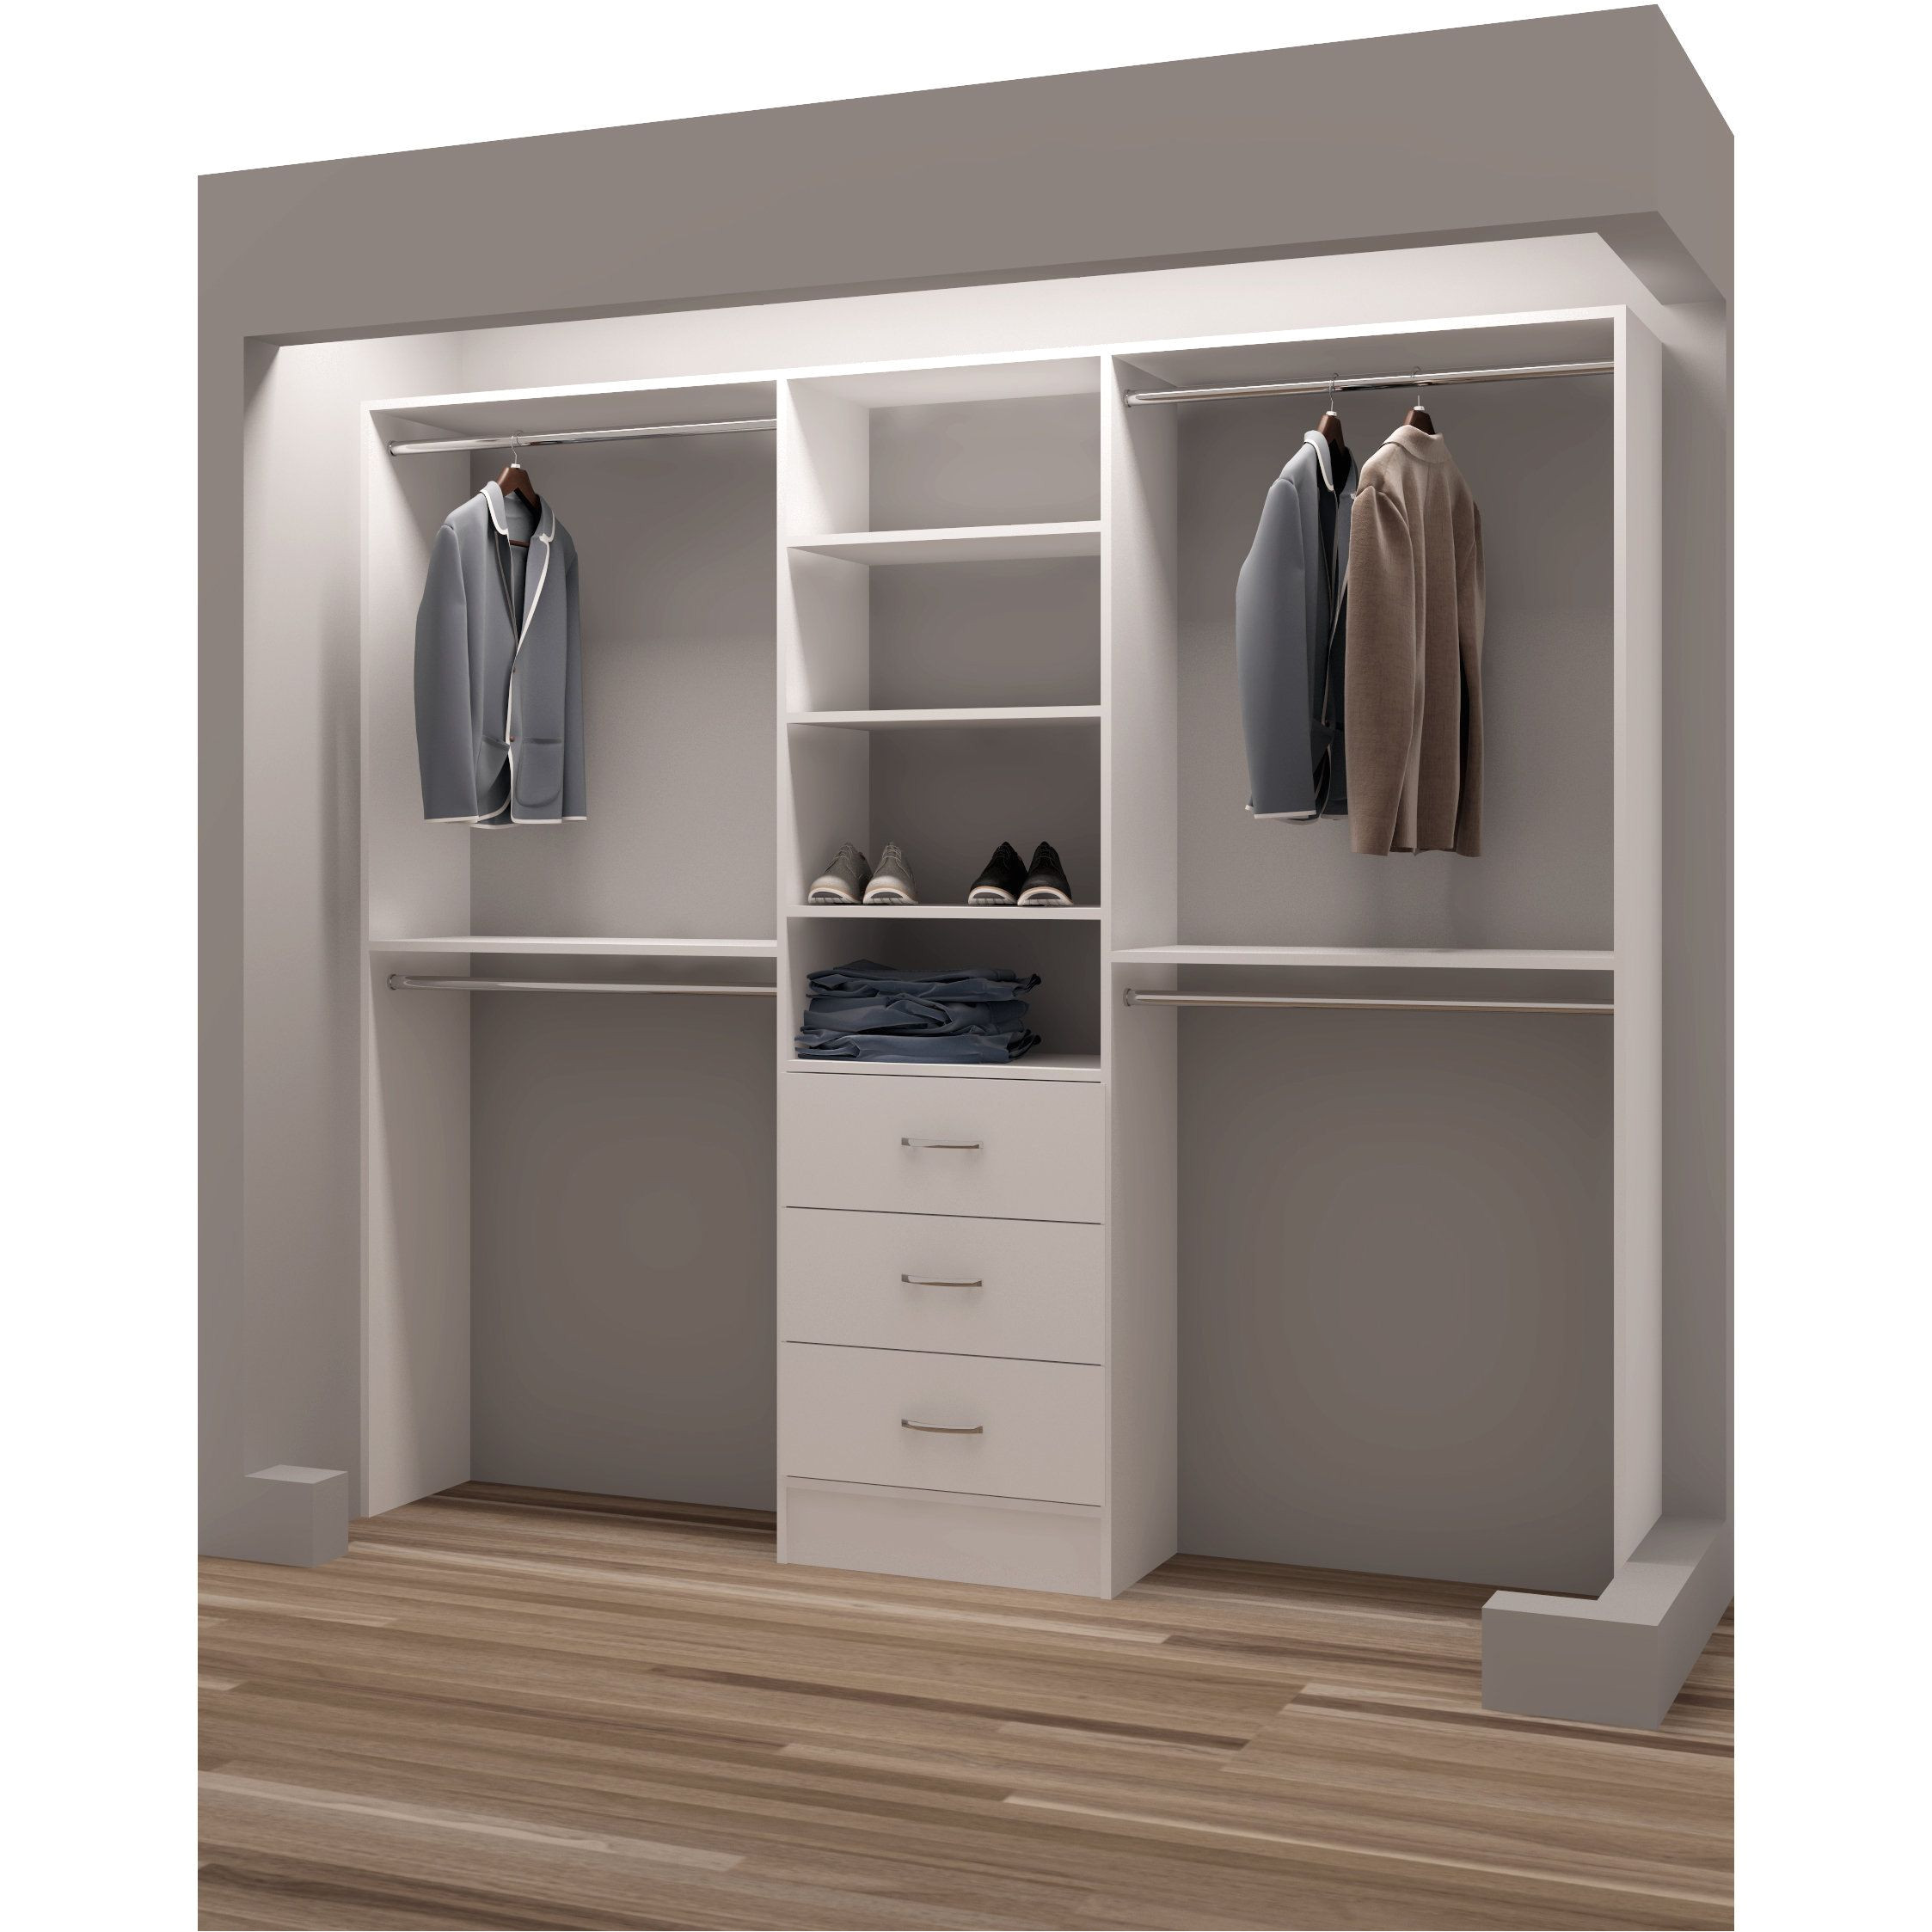 tidysquares classic wood 87 inch reach in closet organizer armario puertas correderas closet